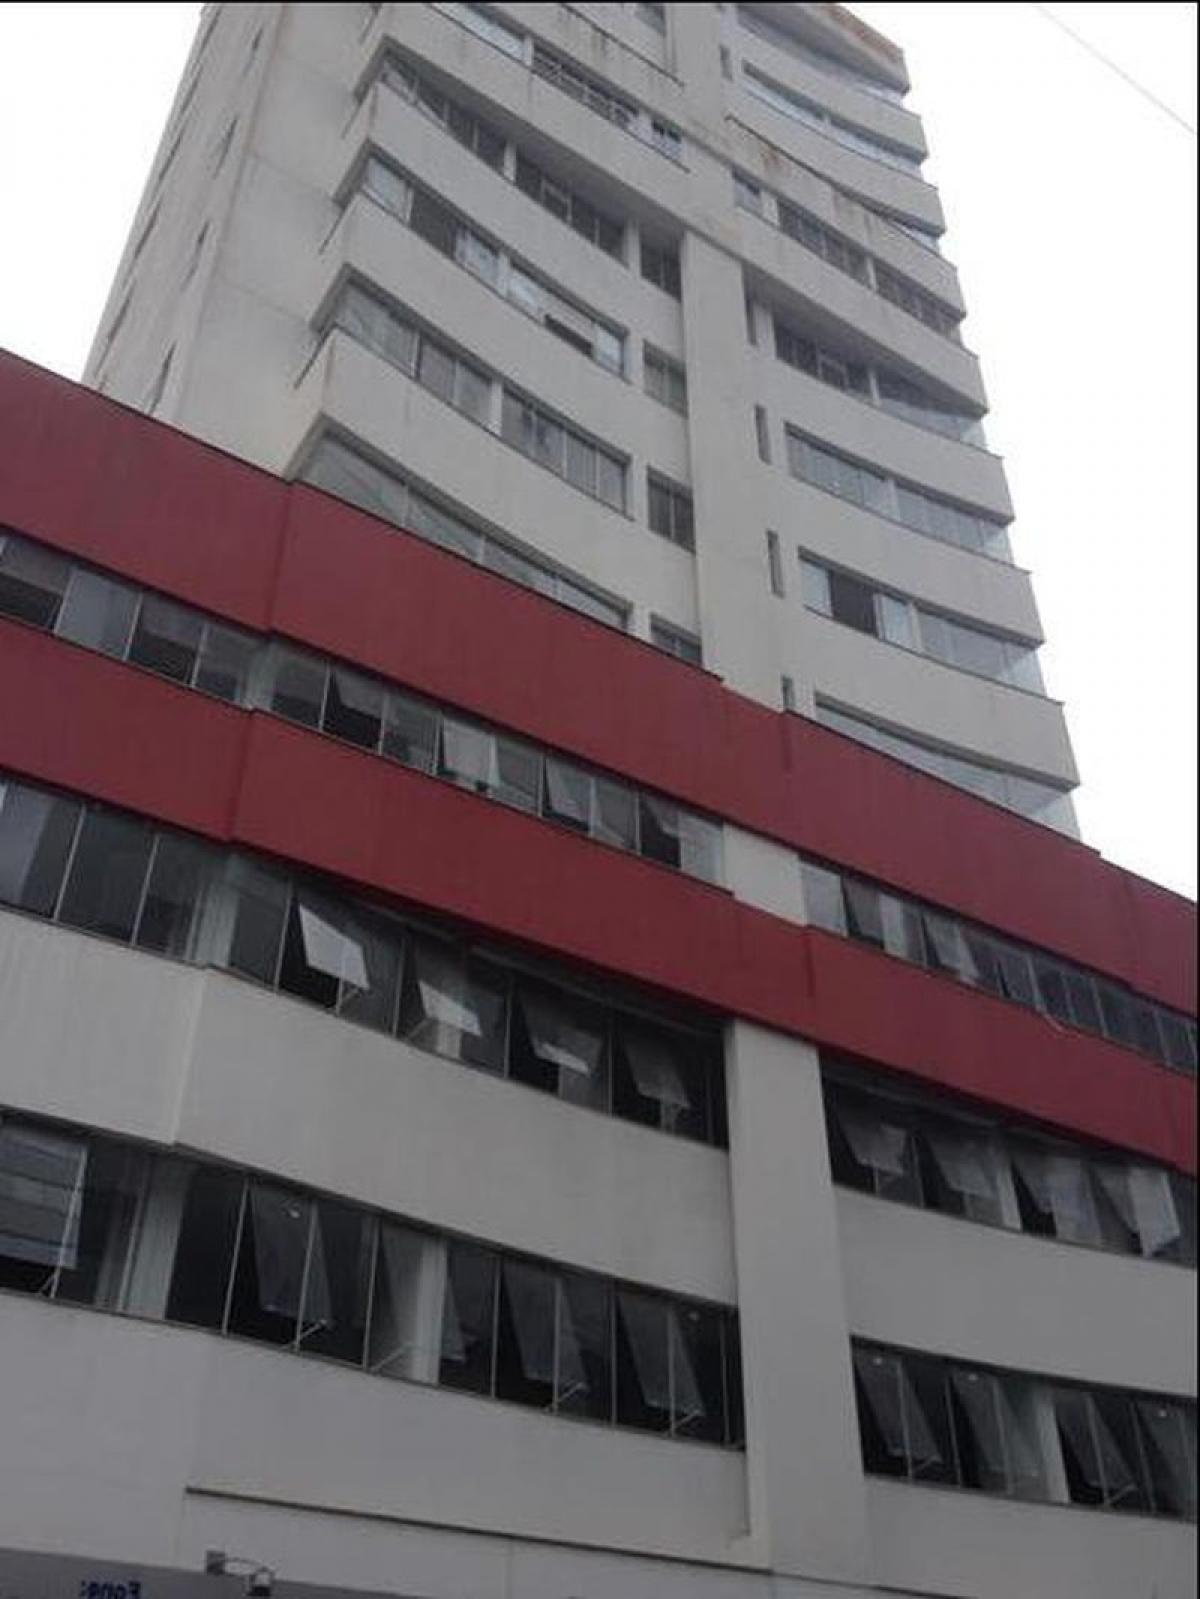 Picture of Commercial Building For Sale in Balneario Camboriu, Santa Catarina, Brazil